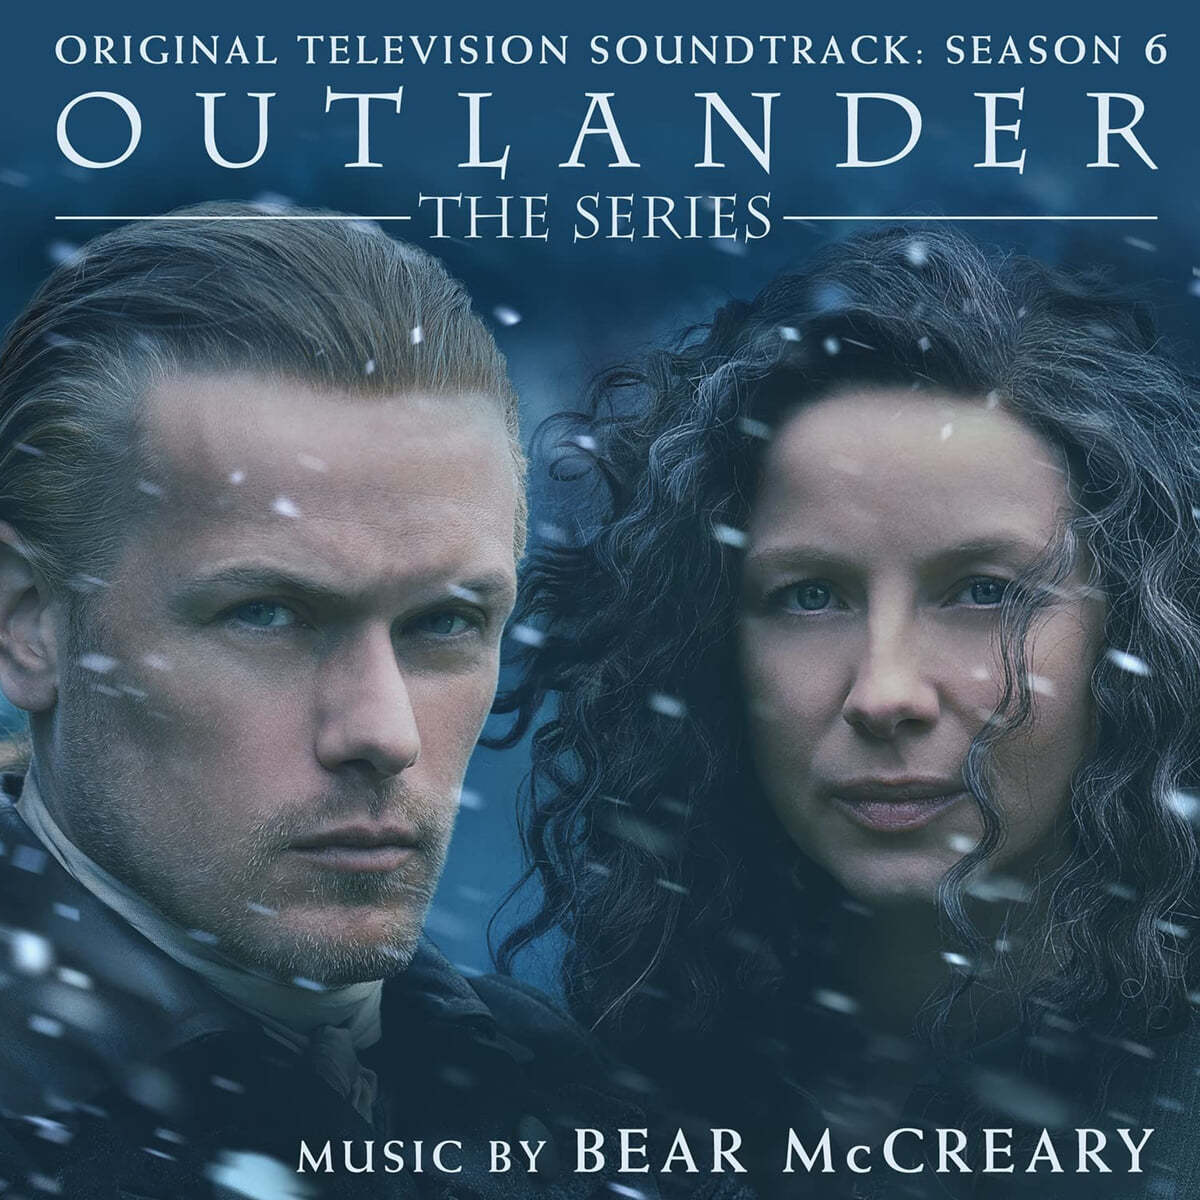 아웃랜더 시즌 6 드라마음악 (Outlander Season 6 OST by Bear McCreary)